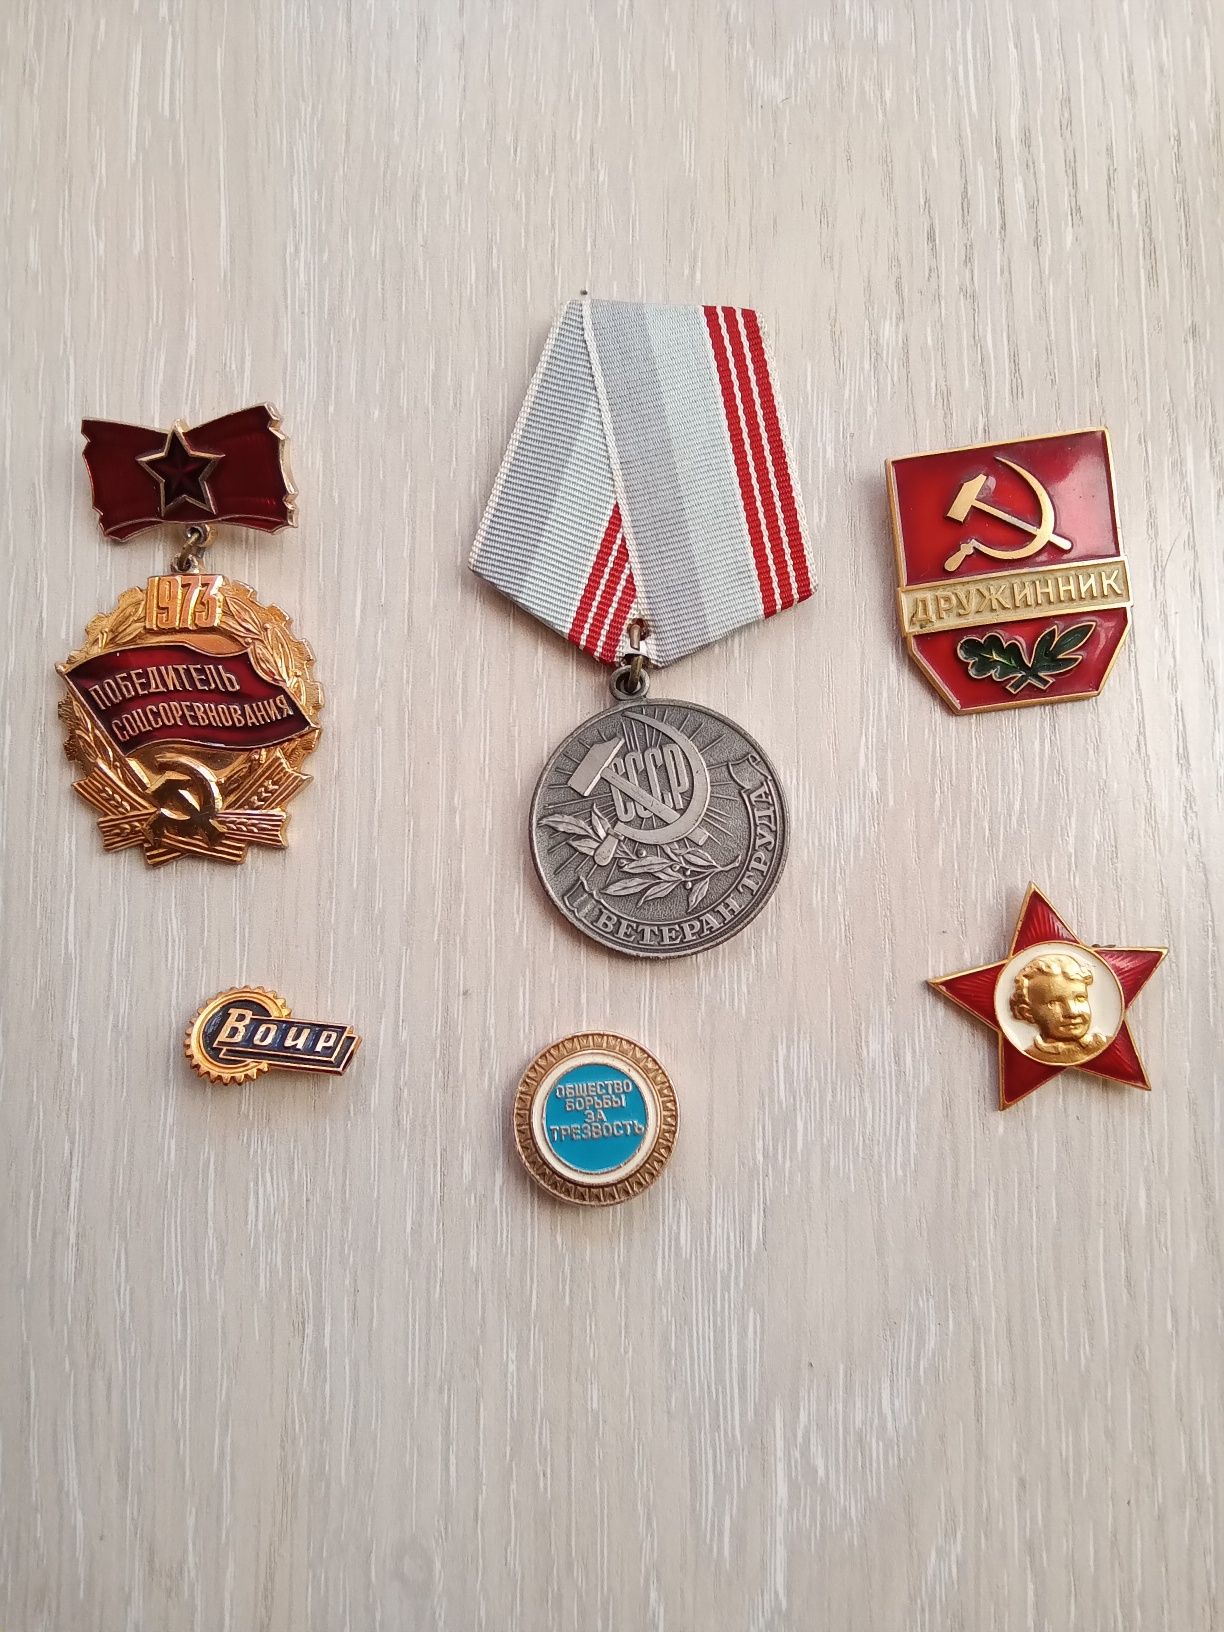 Медальоны фото Петродворца в Ленингаде, значки коллекционные. СССР